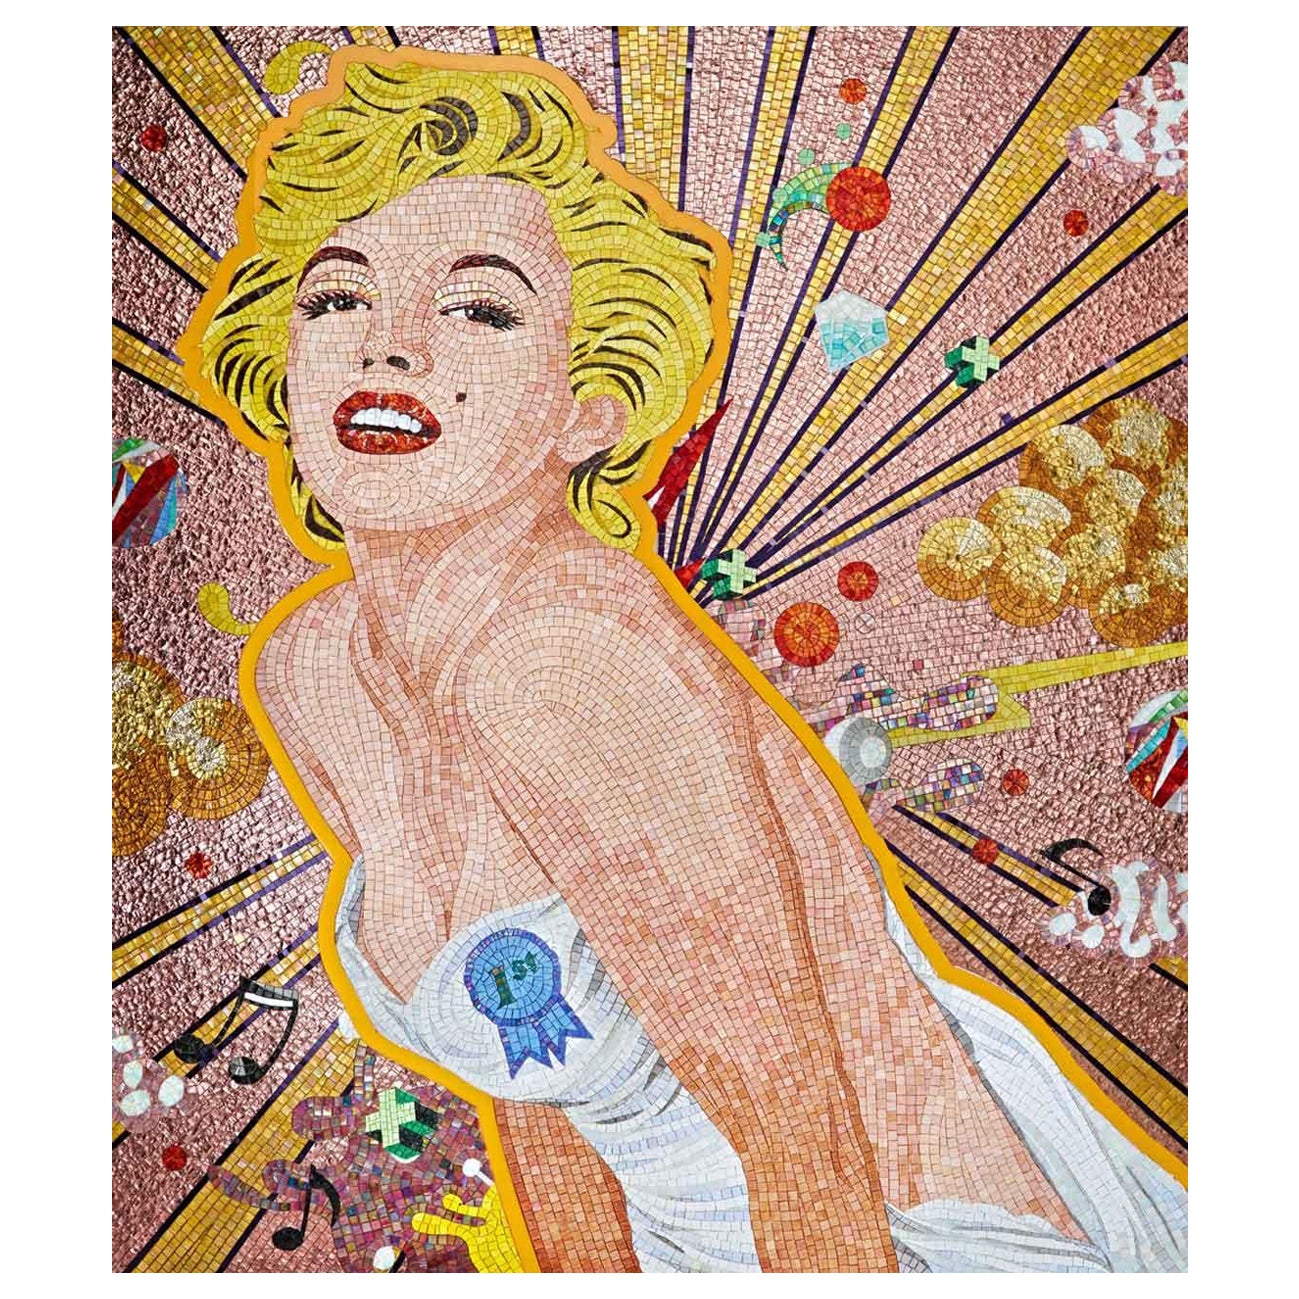 Bunte, handgefertigte, künstlerische Mosaik Merilyn Pop, maßgefertigte Optionen verfügbar